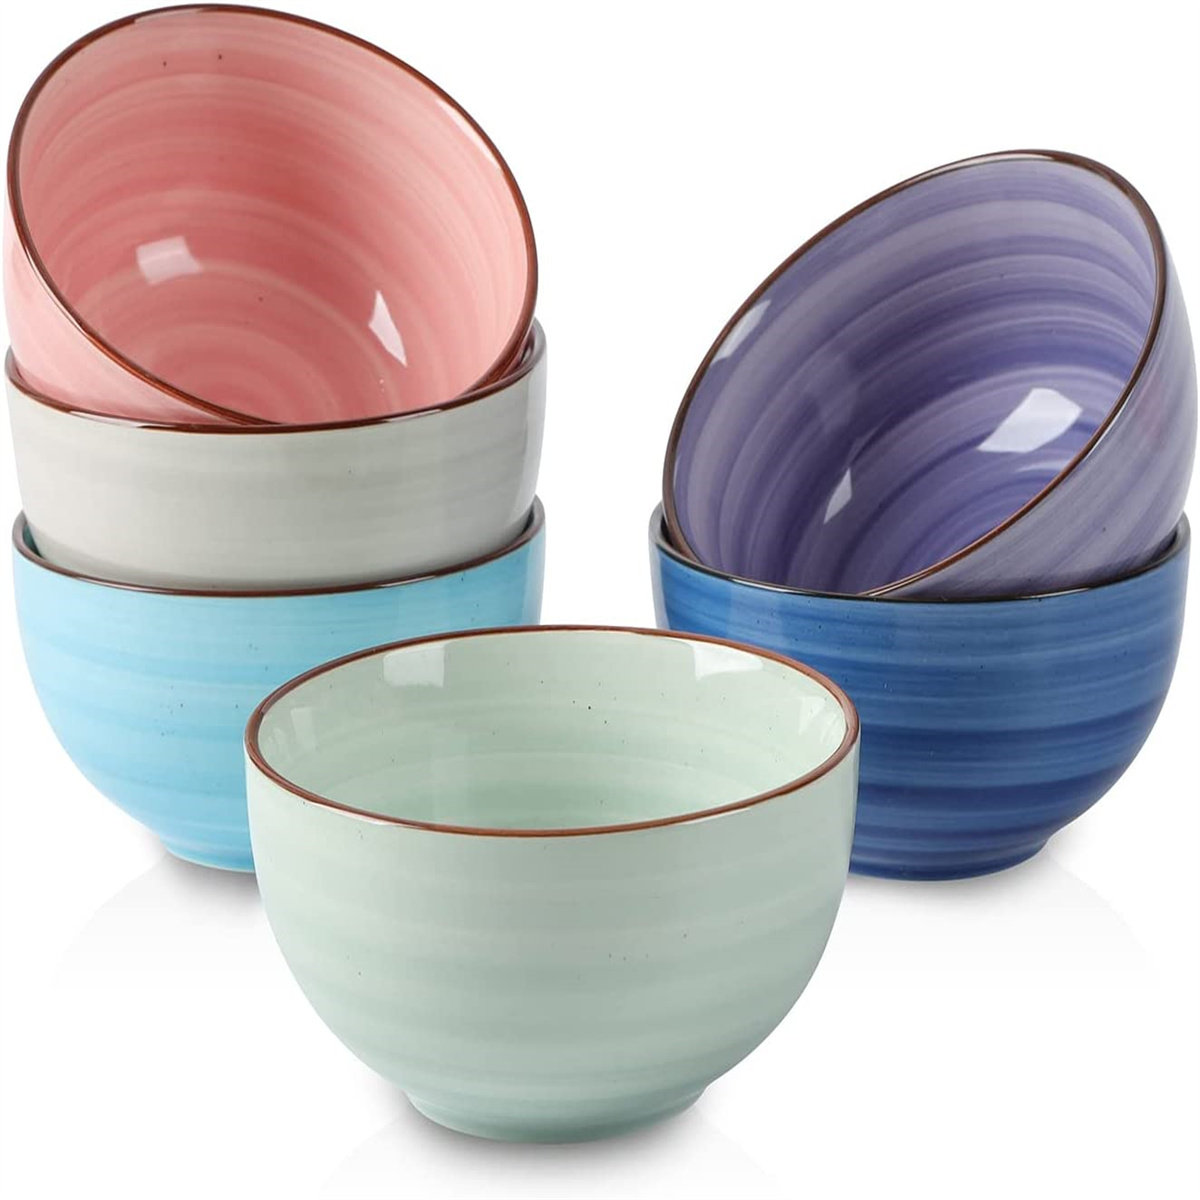 https://assets.wfcdn.com/im/40480661/compr-r85/2487/248795244/ceramic-12-oz-dessert-bowls-set-small-cereal-bowls-for-kitchen-47-inch-ice-cream-bowls-for-snack-side-dishes-dips-microwave-dishwasher-safe-gift-set-of-6.jpg